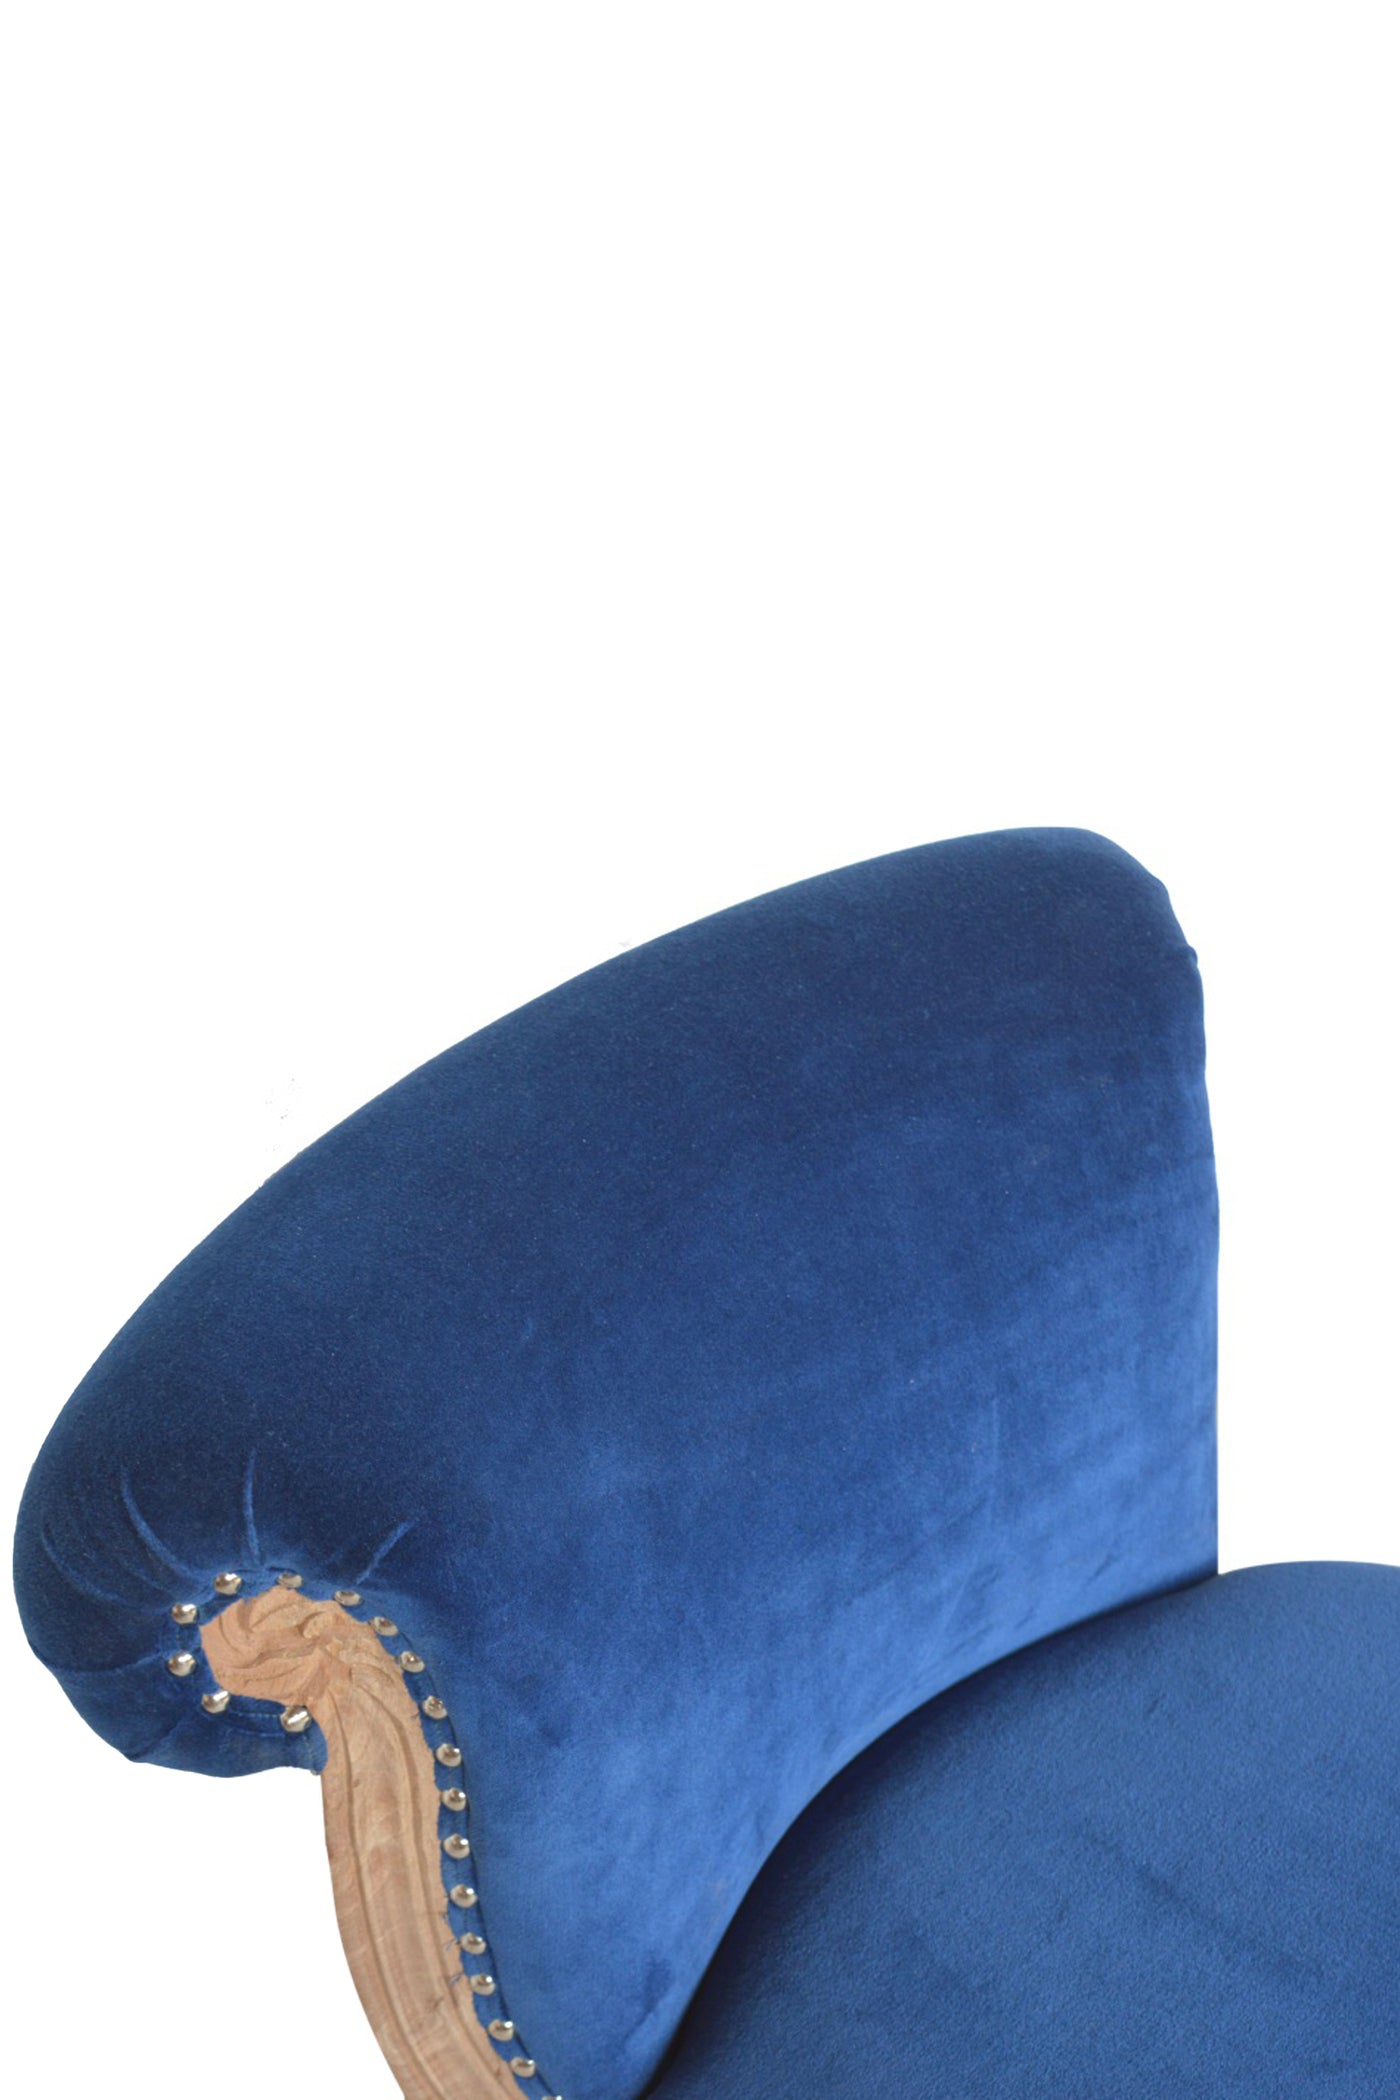 Versailles - Chair Studded Blue